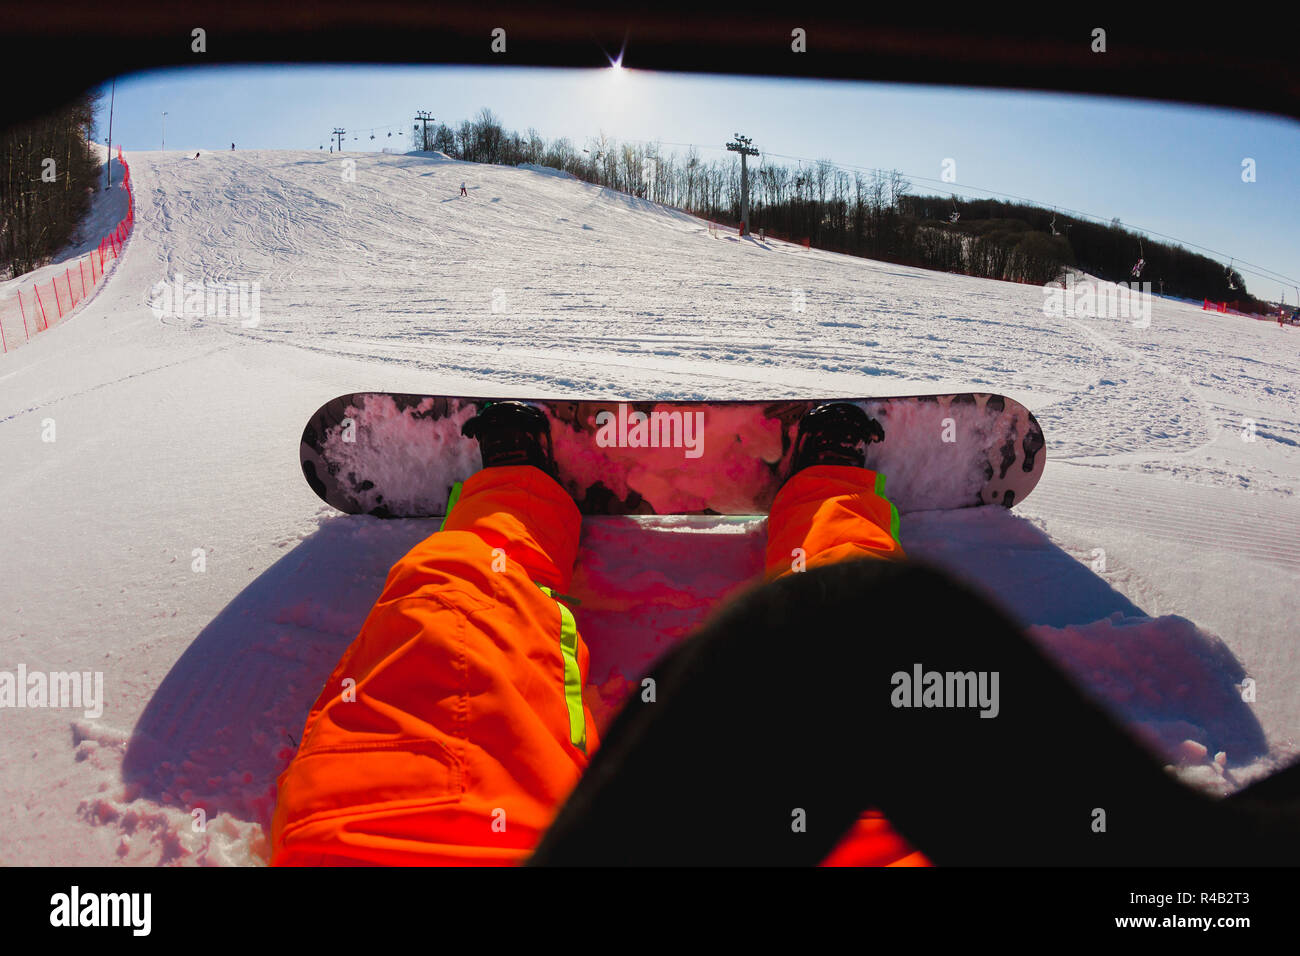 Point de vue d'un homme snowboarder assis sur la neige Banque D'Images